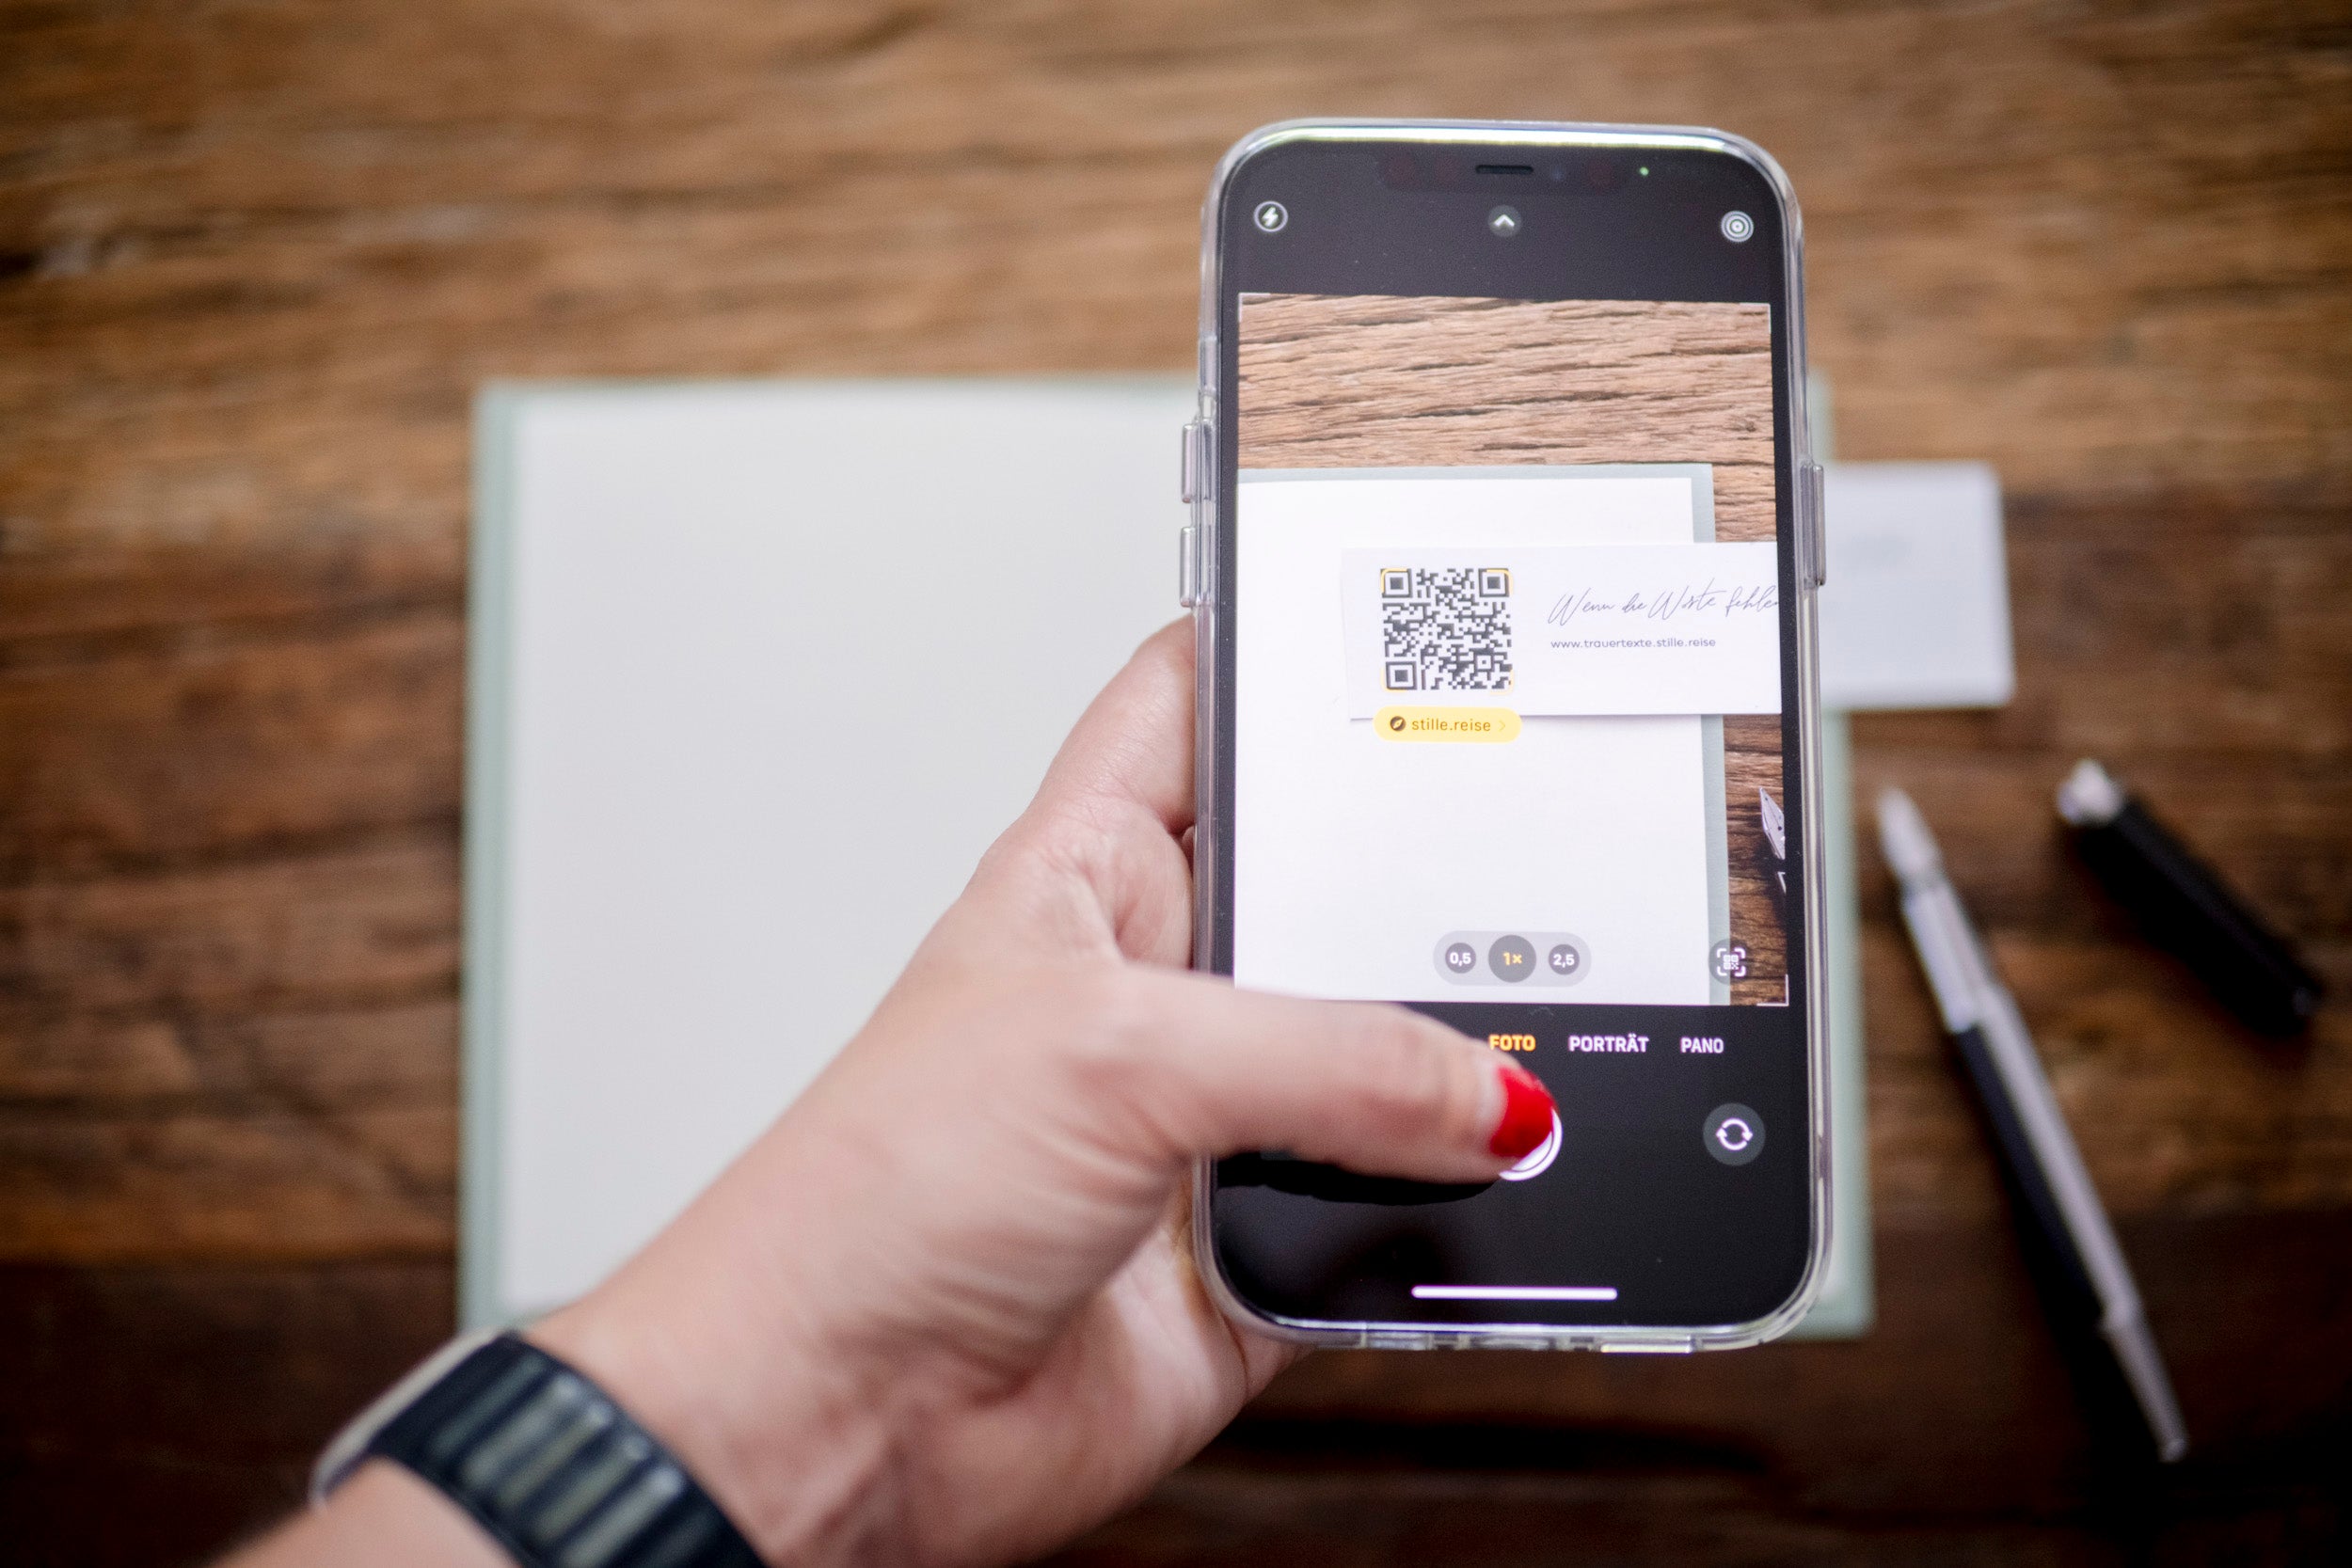 Trauertexte Inspiration für Beileidskarten - QR-Code wird mit dem Smartphone videografiert